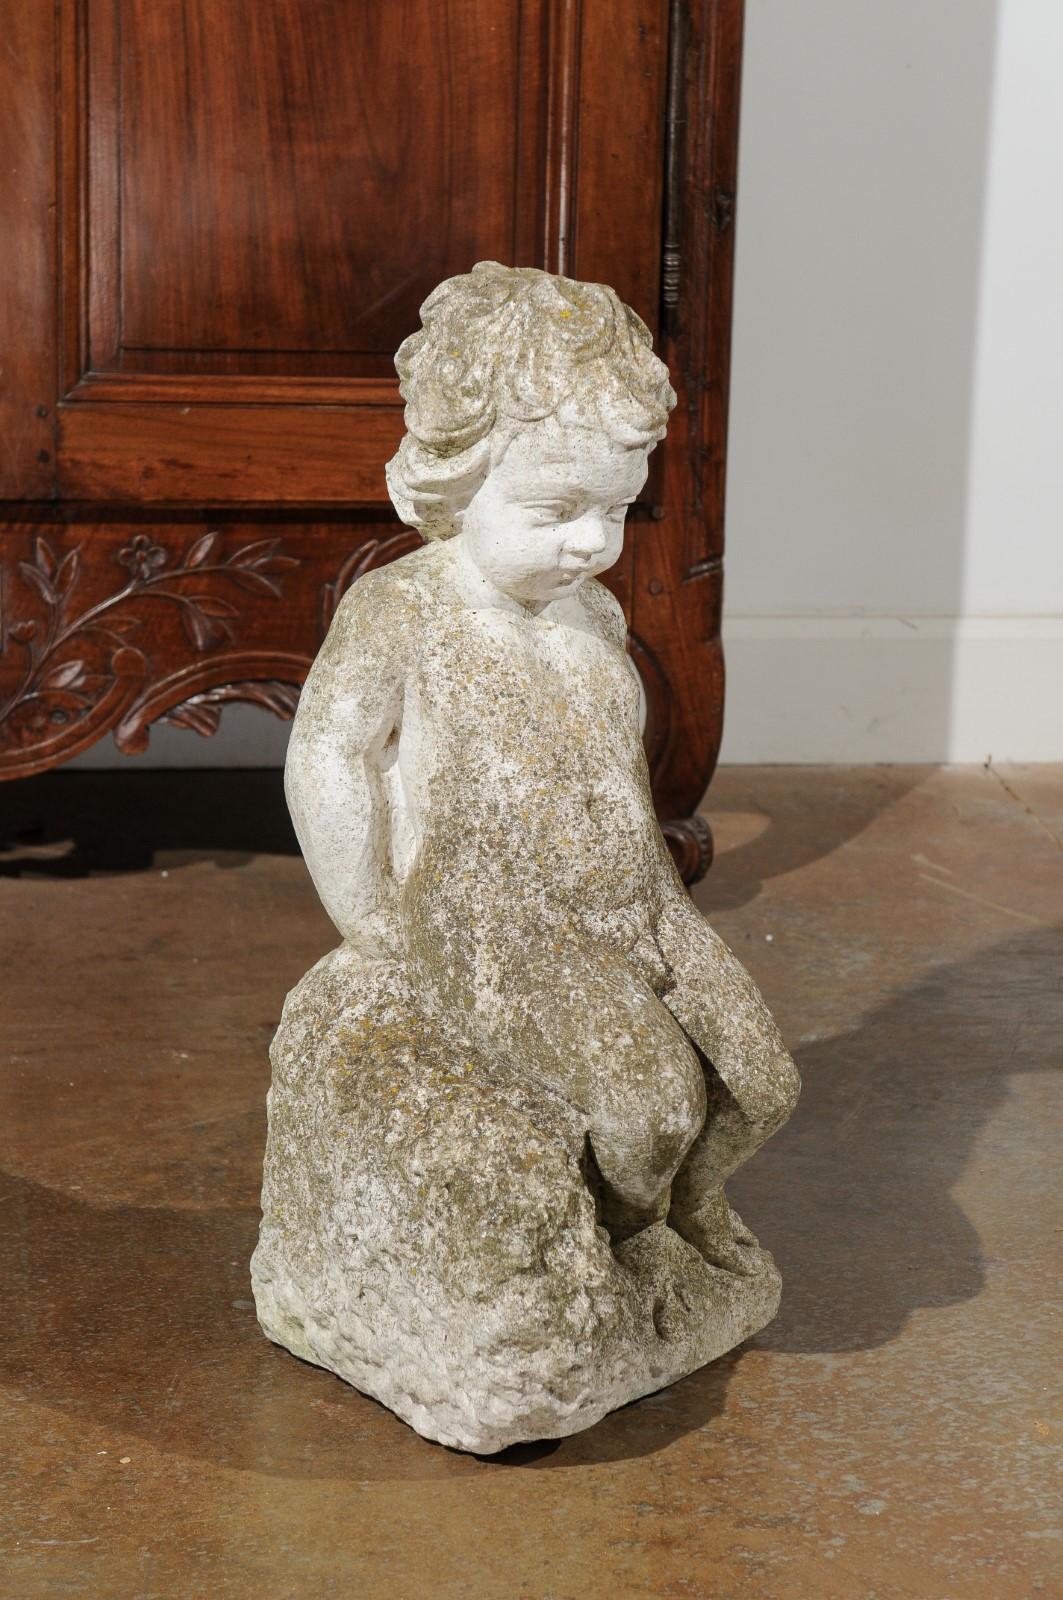 Sculpture de jardin suédoise en pierre sculptée datant du XXe siècle, représentant un putto assis sur un rocher. Créée en Suède au cours du 20e siècle, cette sculpture en pierre sculptée nous charme par sa merveilleuse usure et sa patine, entourant